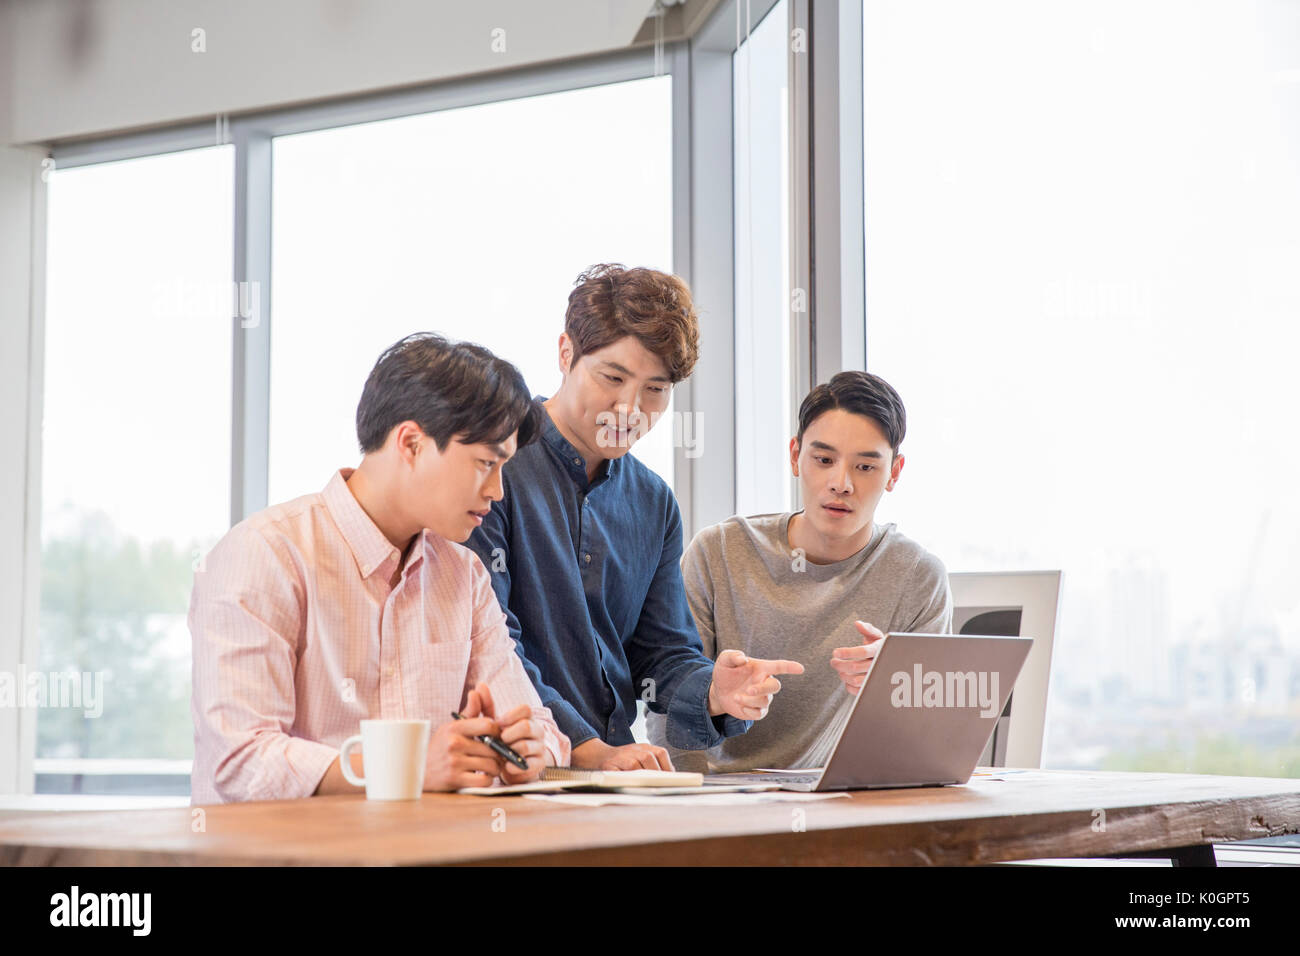 Tres empresarios sonrientes tener un encuentro compartiendo un ordenador portátil en la cafetería Foto de stock